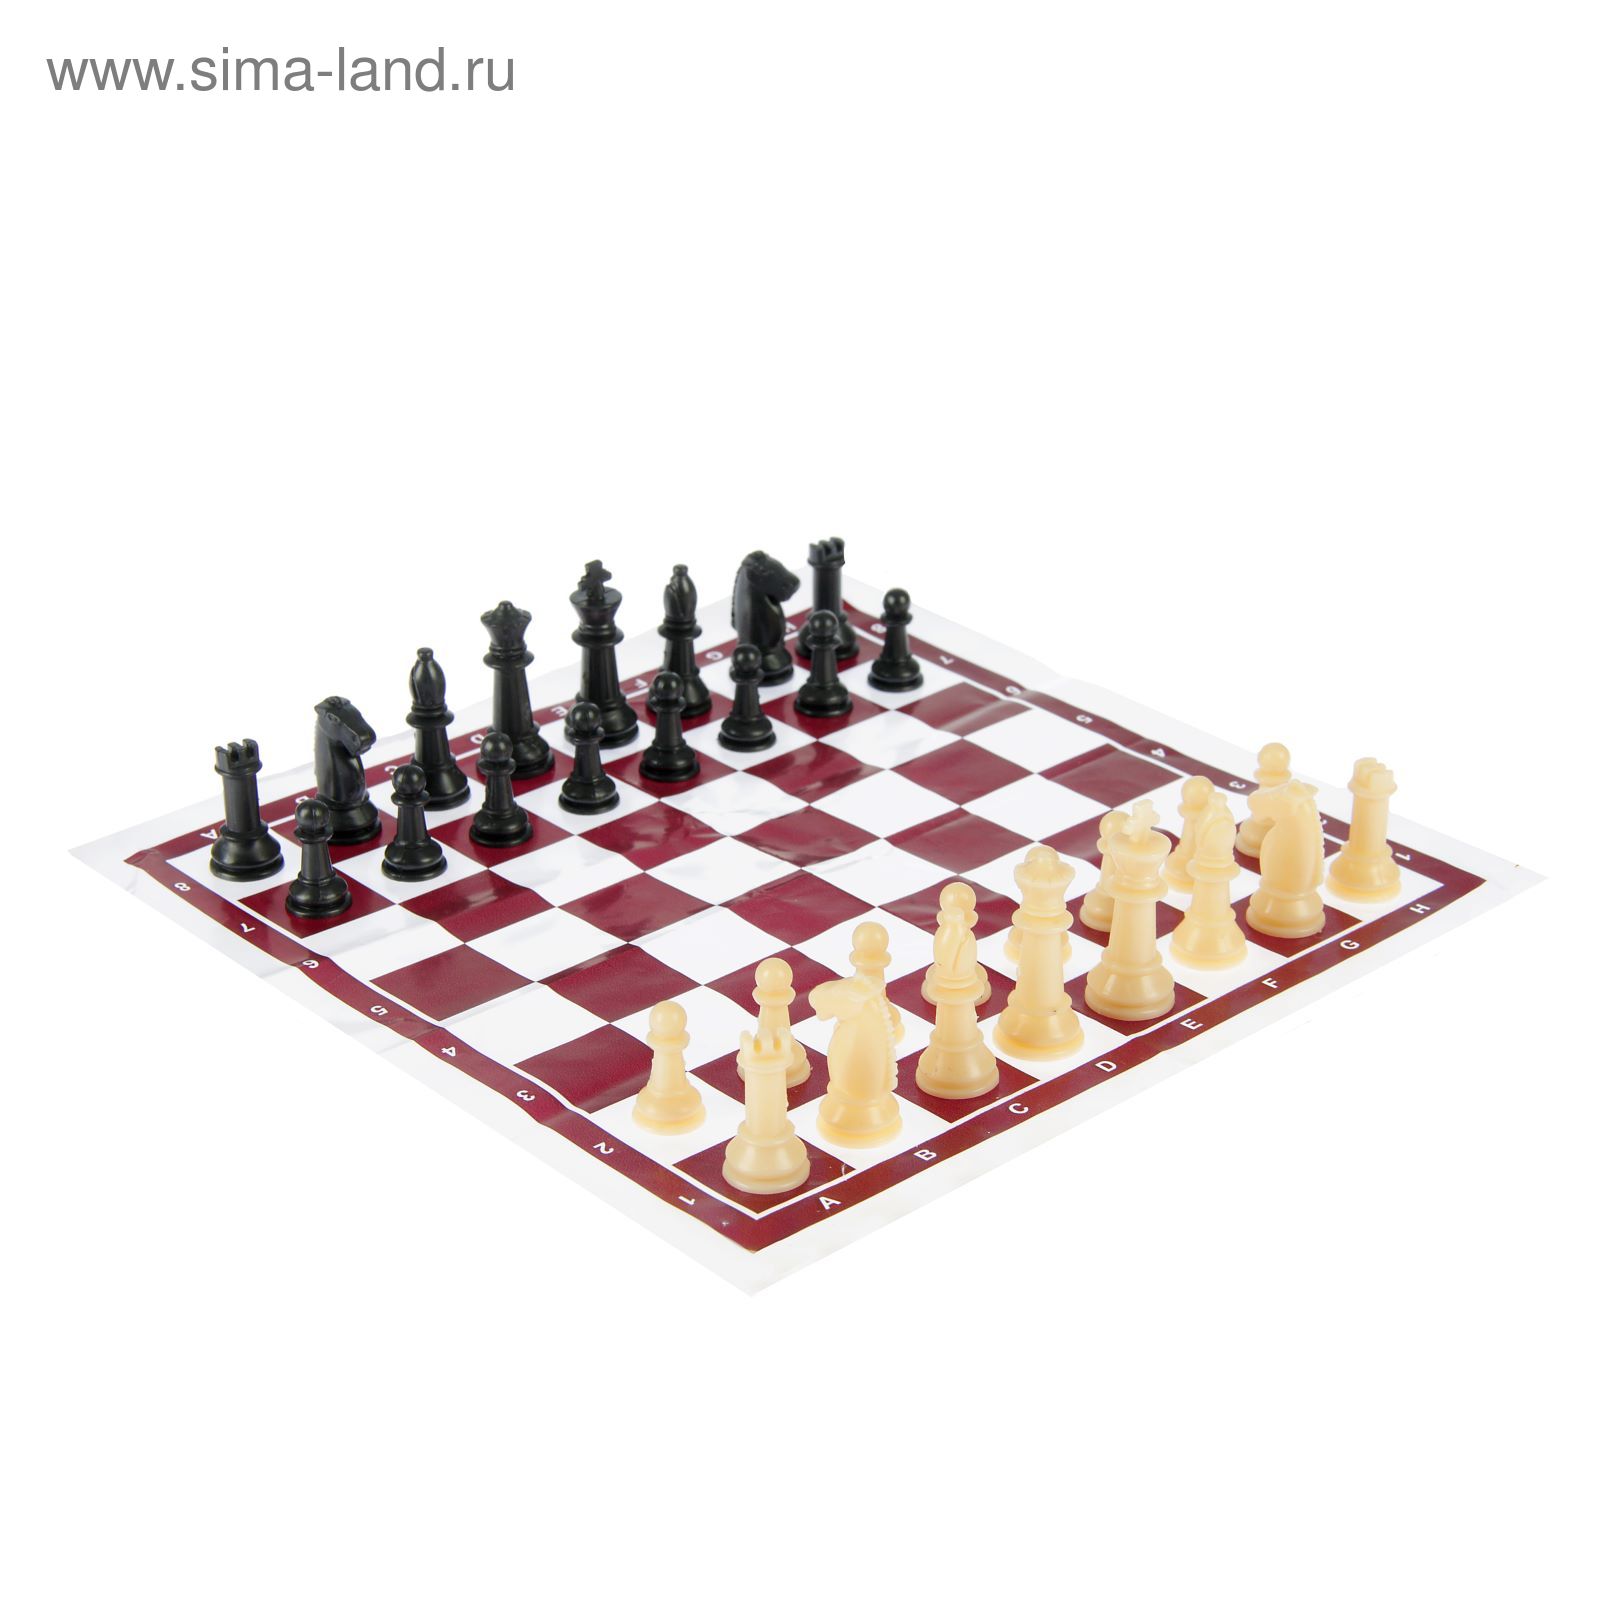 Игра настольная "Шахматы", в пакете, бело-коричневая доска